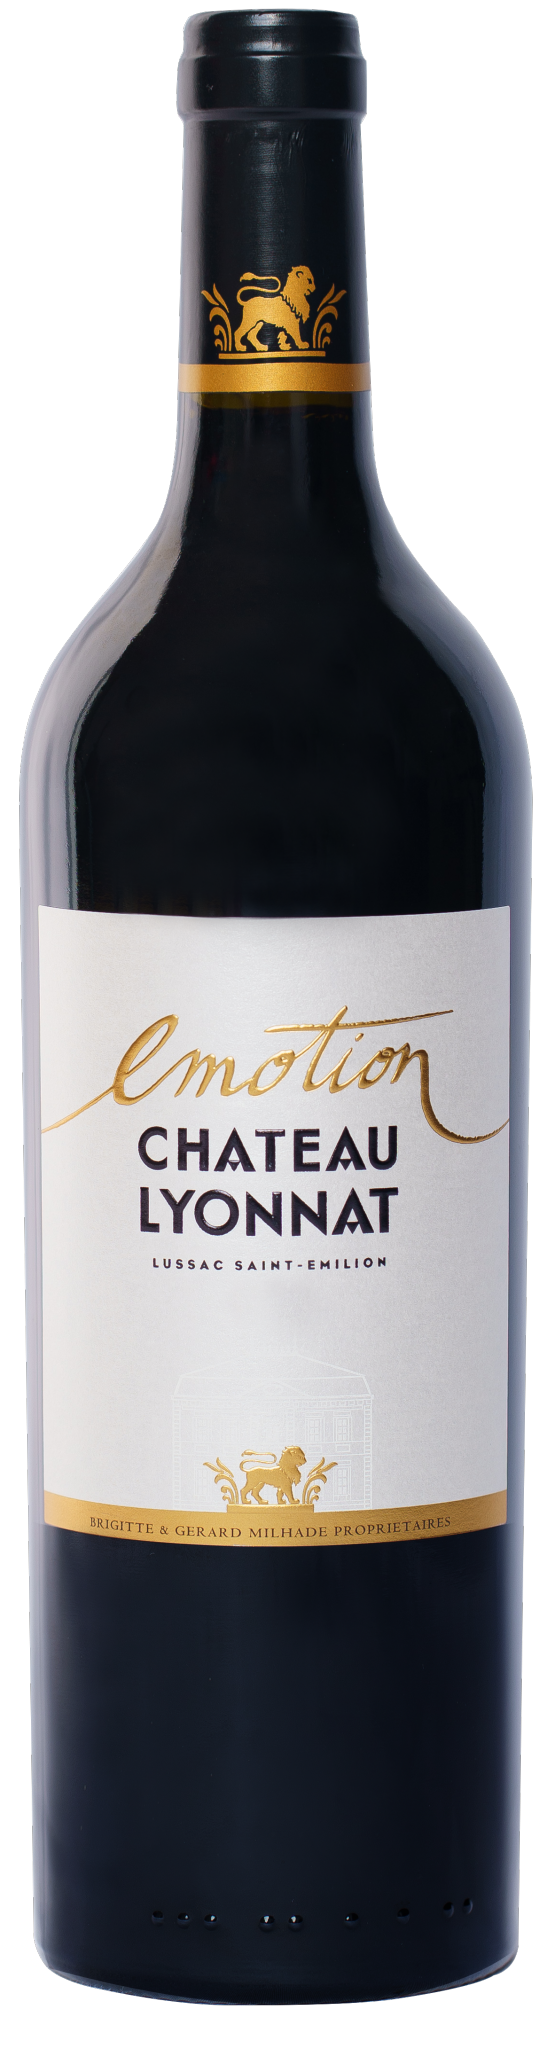 Château Lyonnat Emotion, Lussac Saint-Emilion, 2020